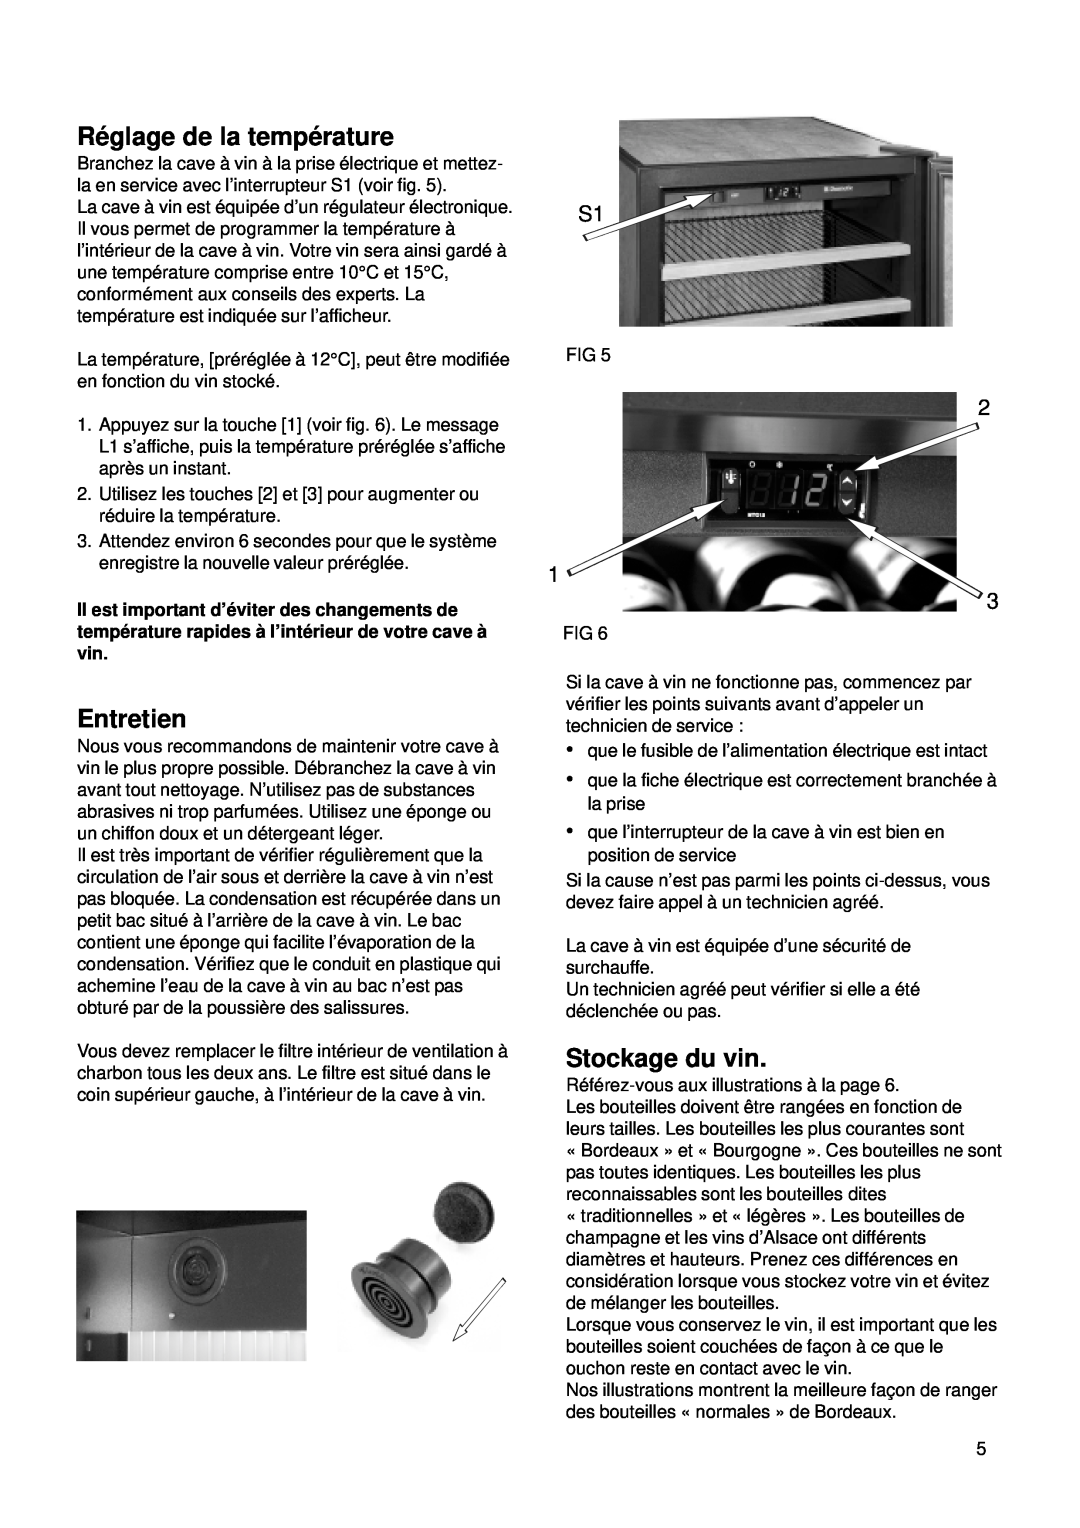 Dometic CS 52 instruction manual Ré glage de la tempé rature, Entretien, Stockage du vin 